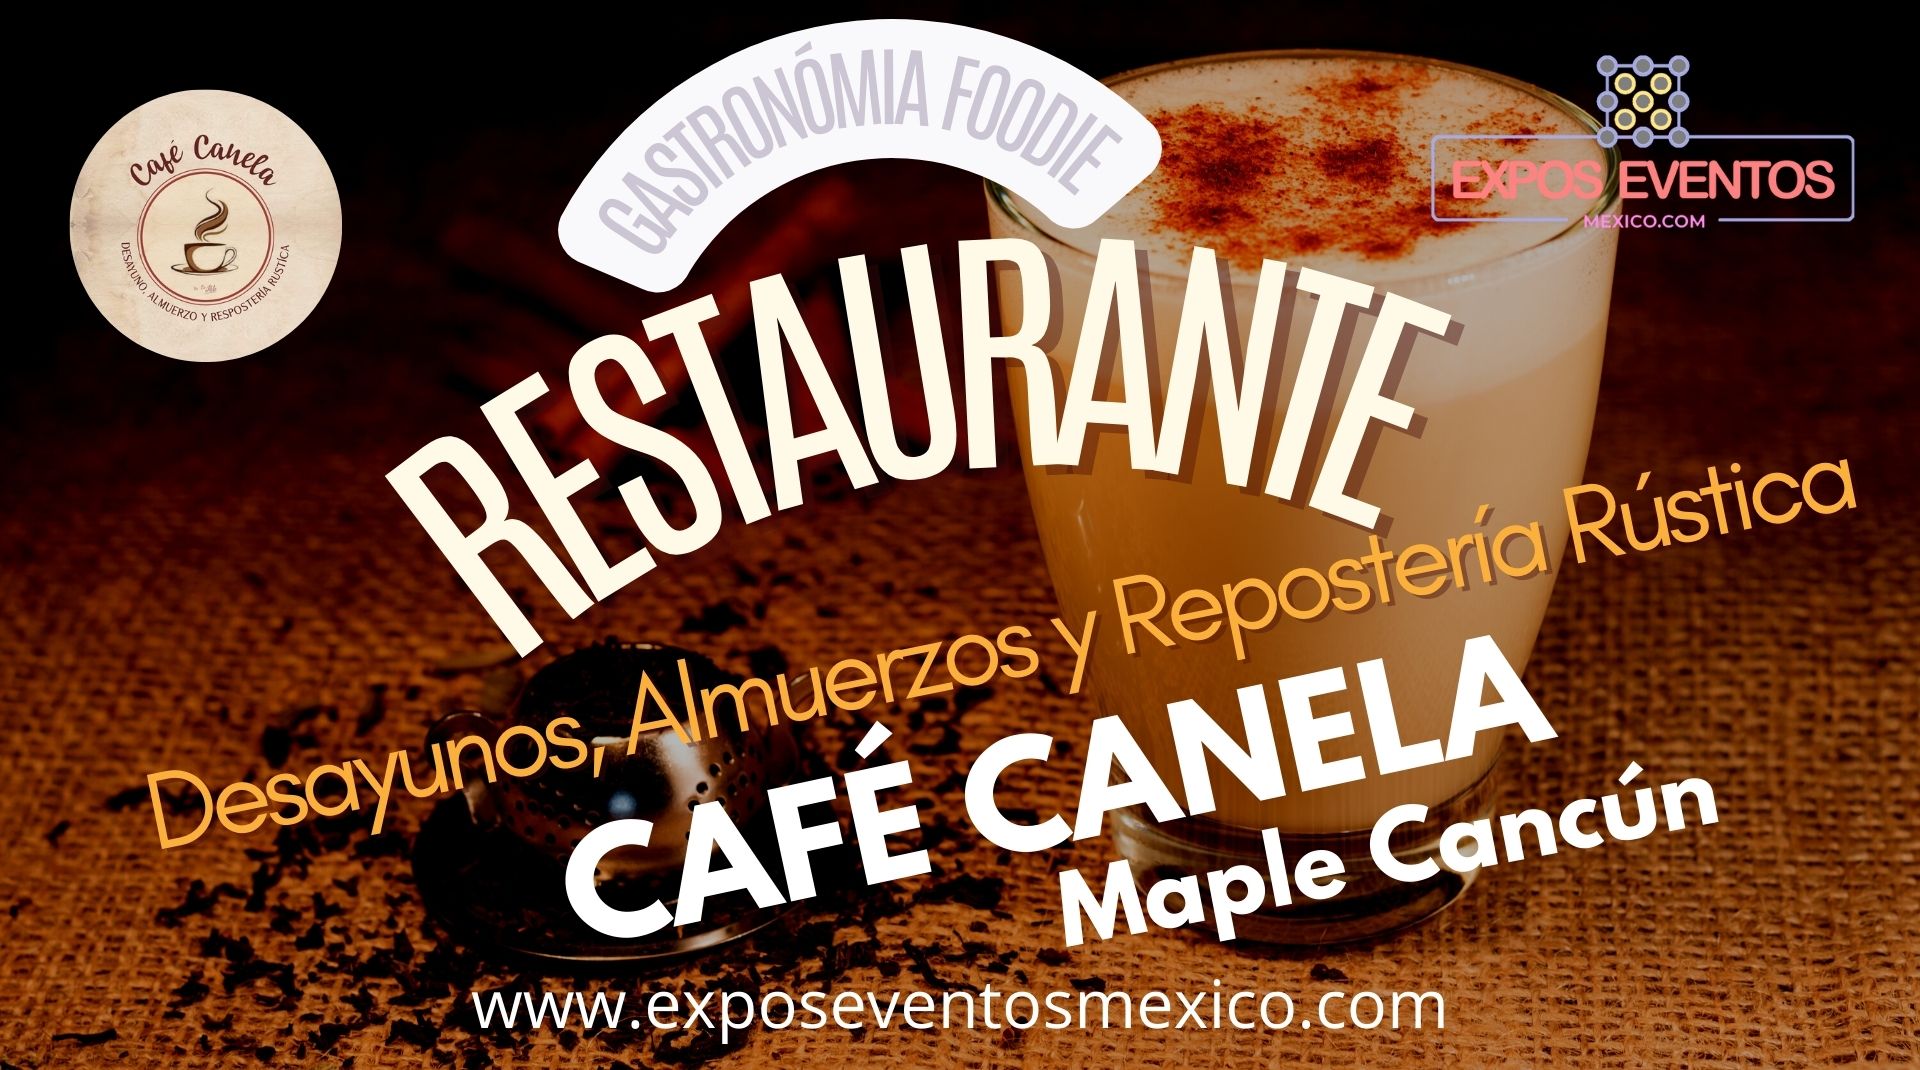 Restaurante Café Canela Maple Cancún. Desayunos, Almuerzos y Repostería Rústica